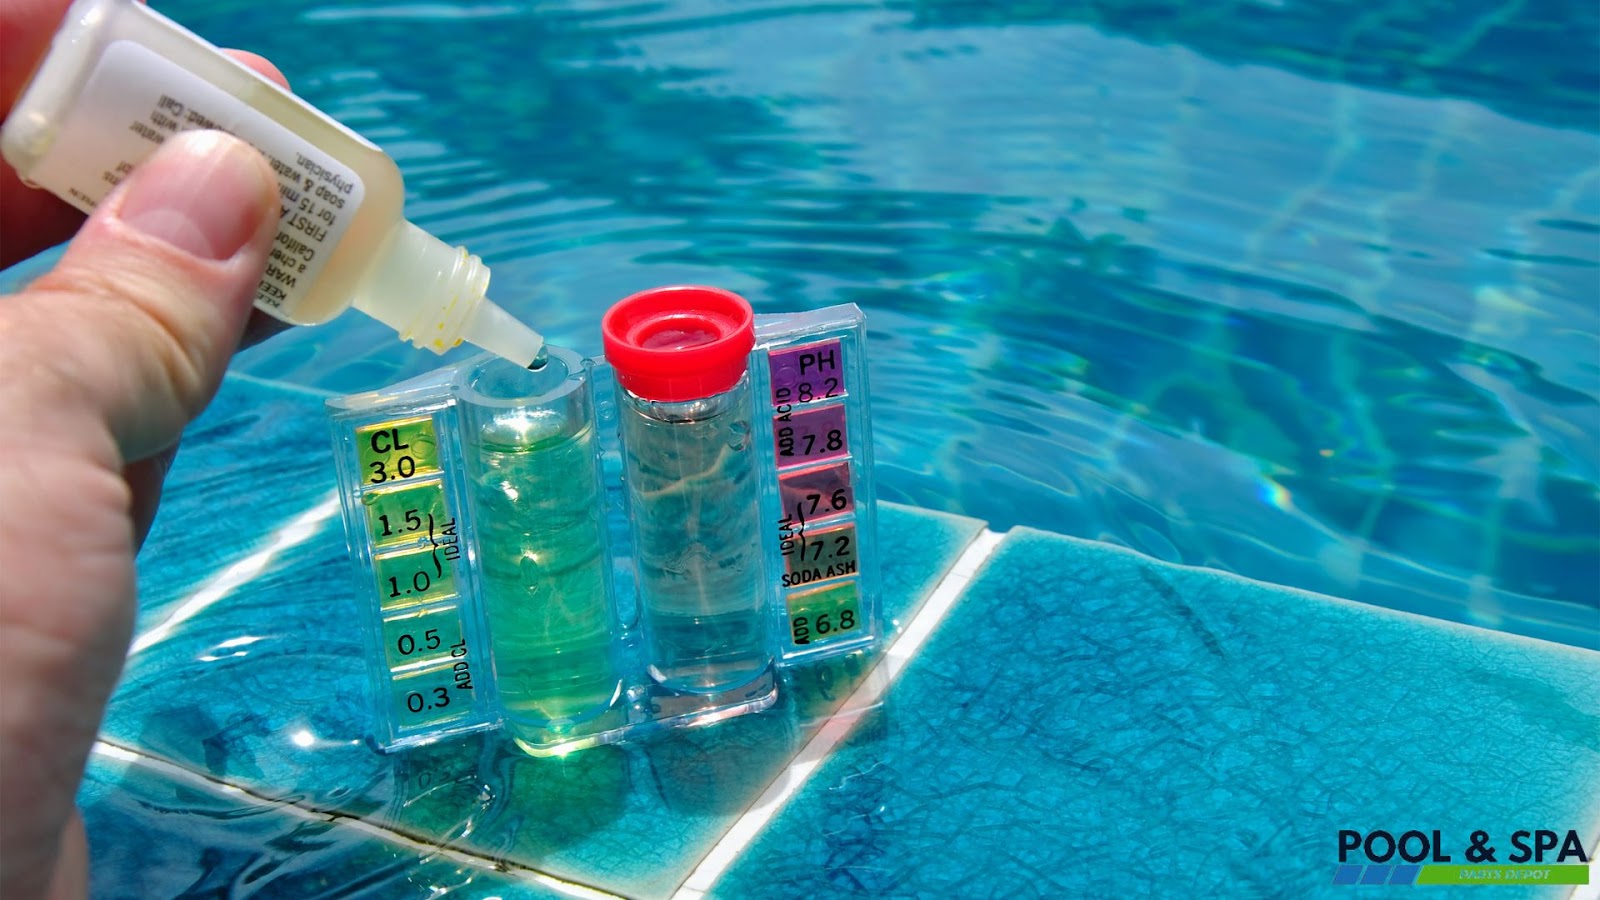 Pool's Water Chemistry